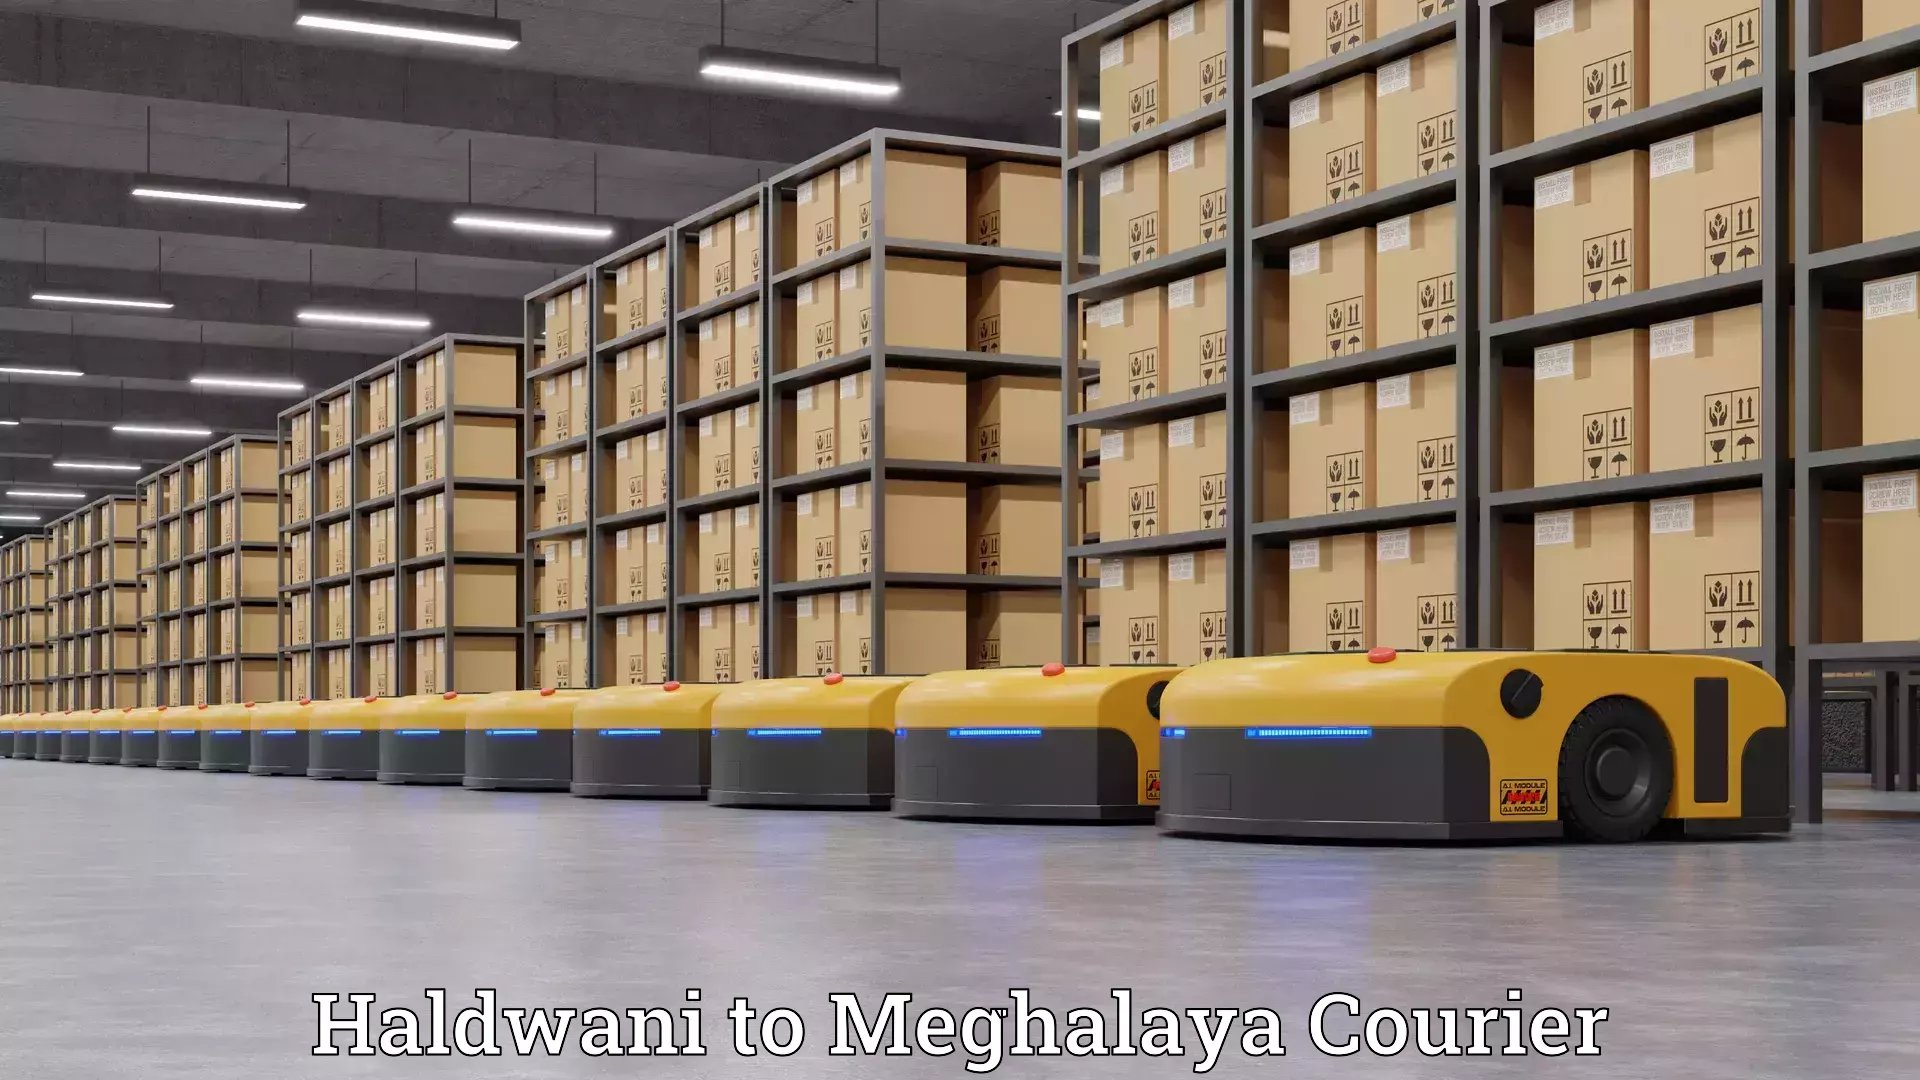 Furniture transport experts Haldwani to Meghalaya